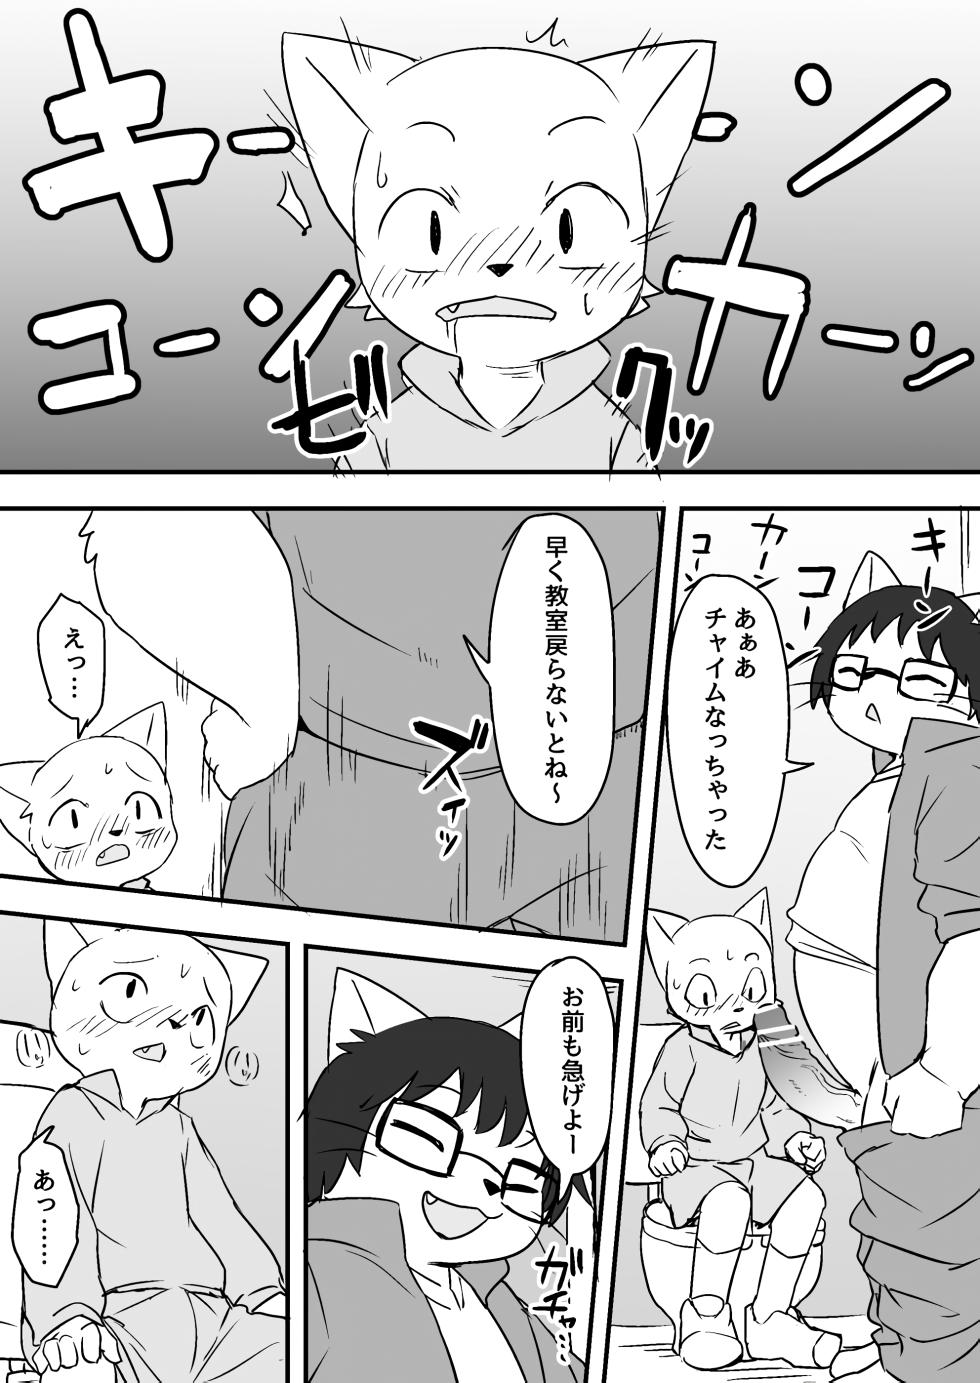 Manmosu Marimo - Sensei Story #1 (Raw) - Page 8